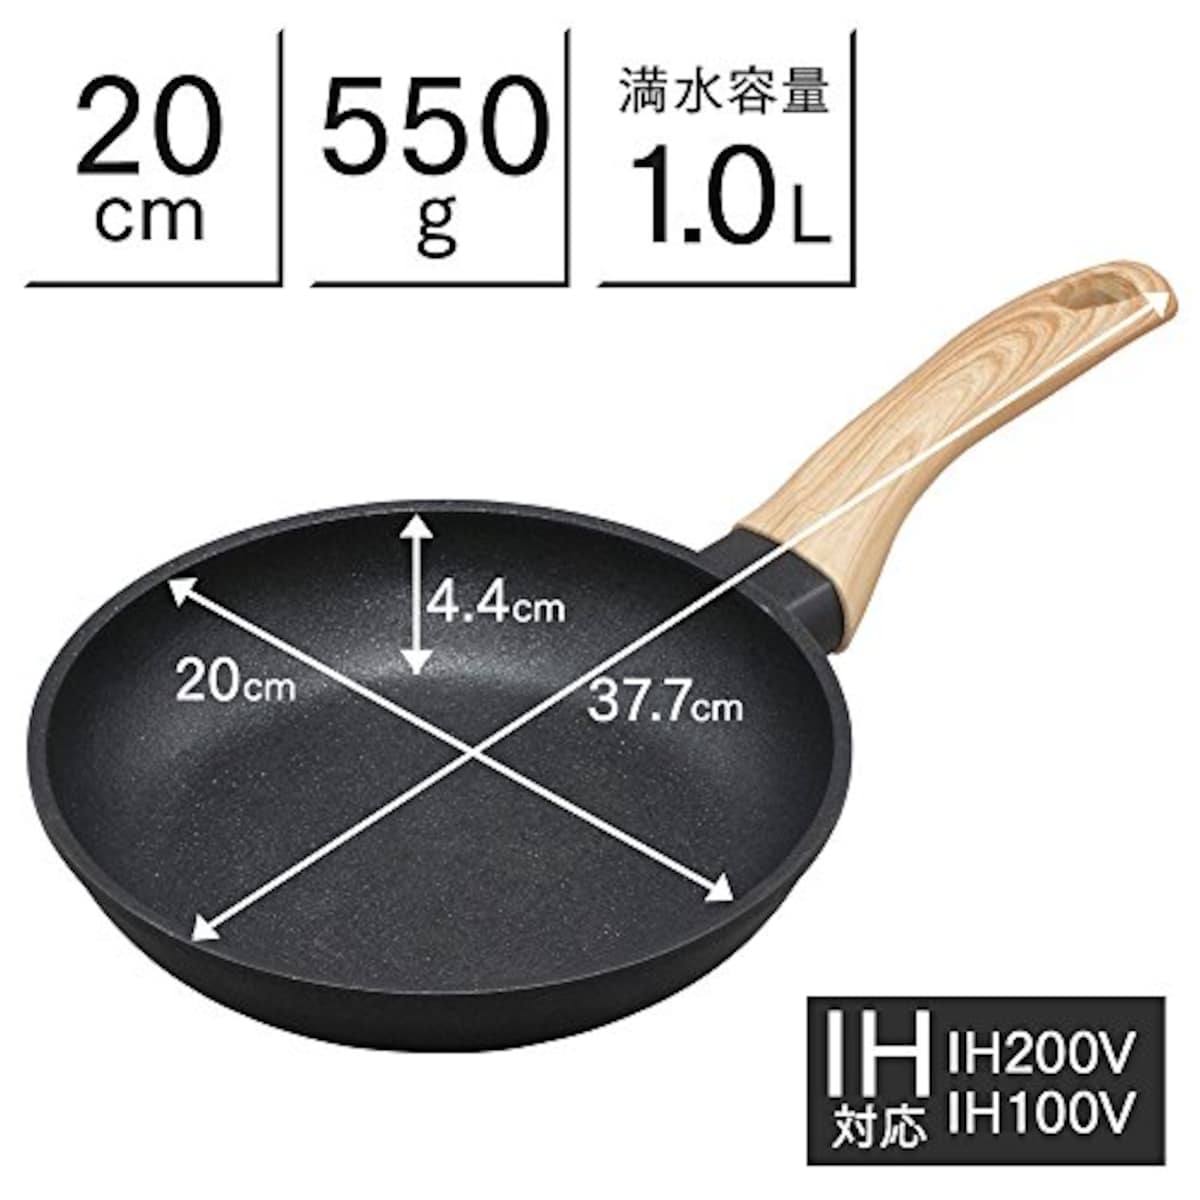  アイリスオーヤマ IH 対応 フライパン 20cm スキレットコートパン ブラック SKL-20IH画像10 